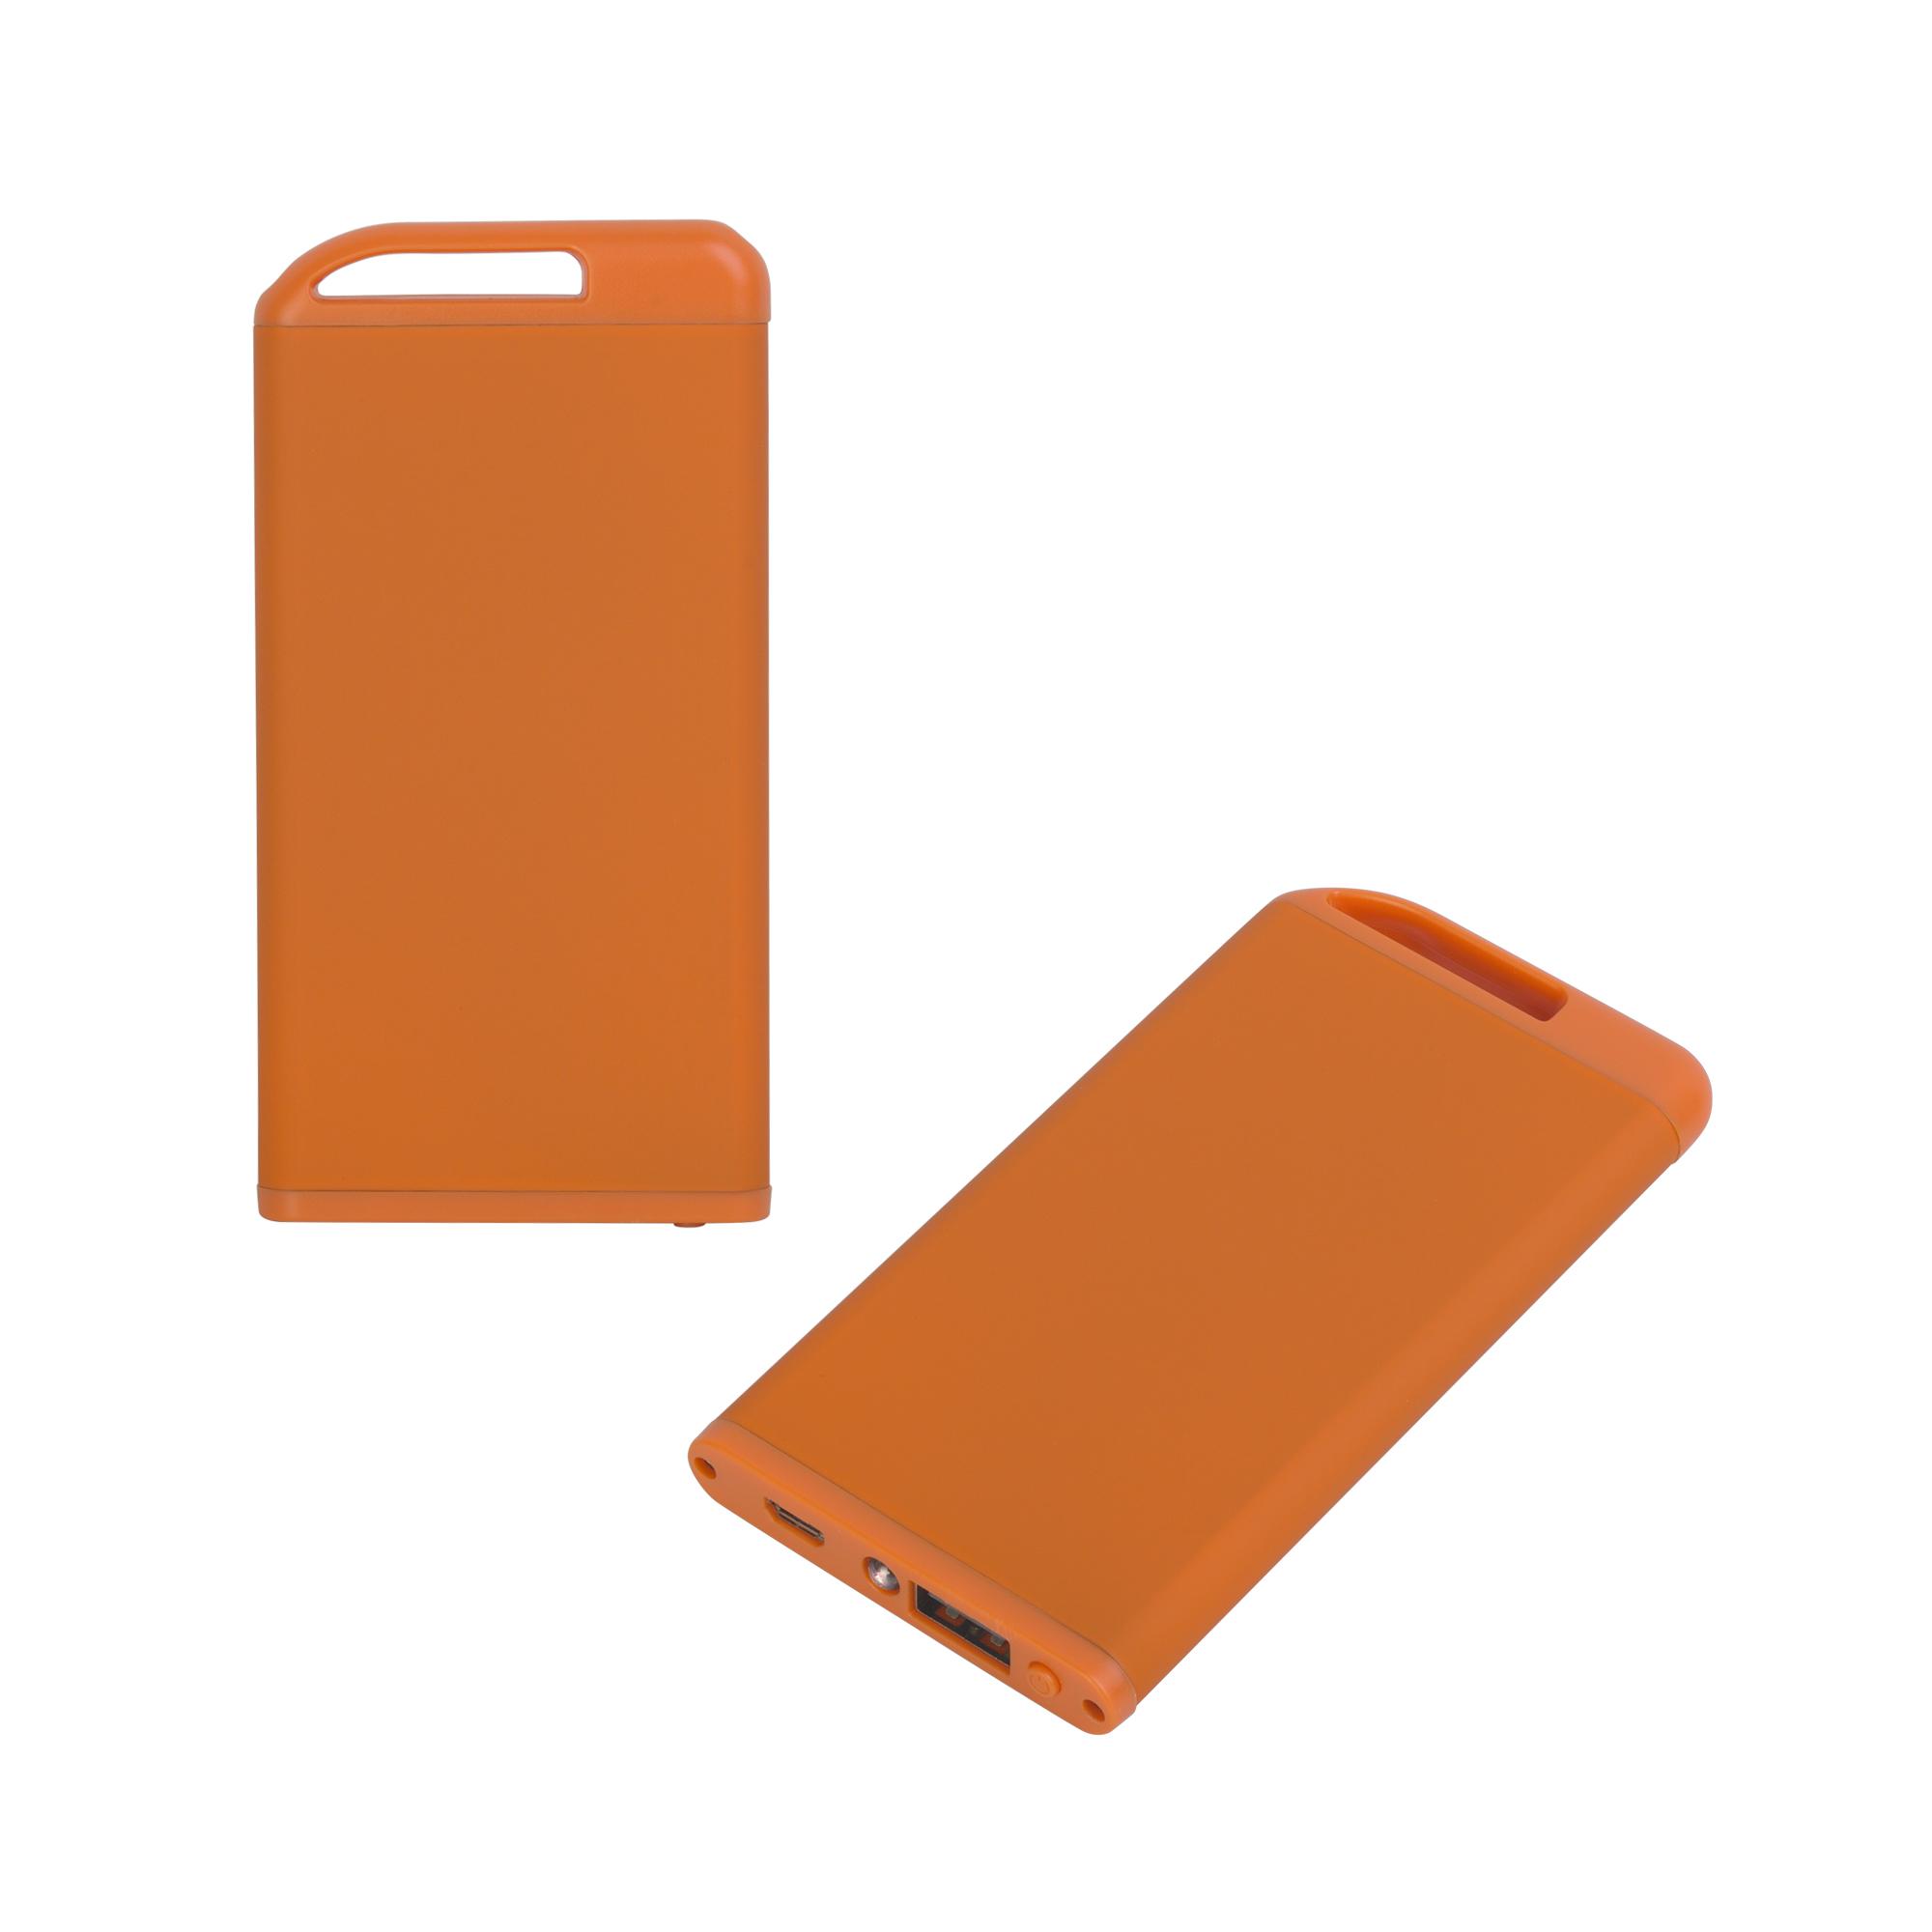 Зарядное устройство "Theta" с фонариком, 4000 mAh, покрытие soft touch, цвет оранжевый, фото 1